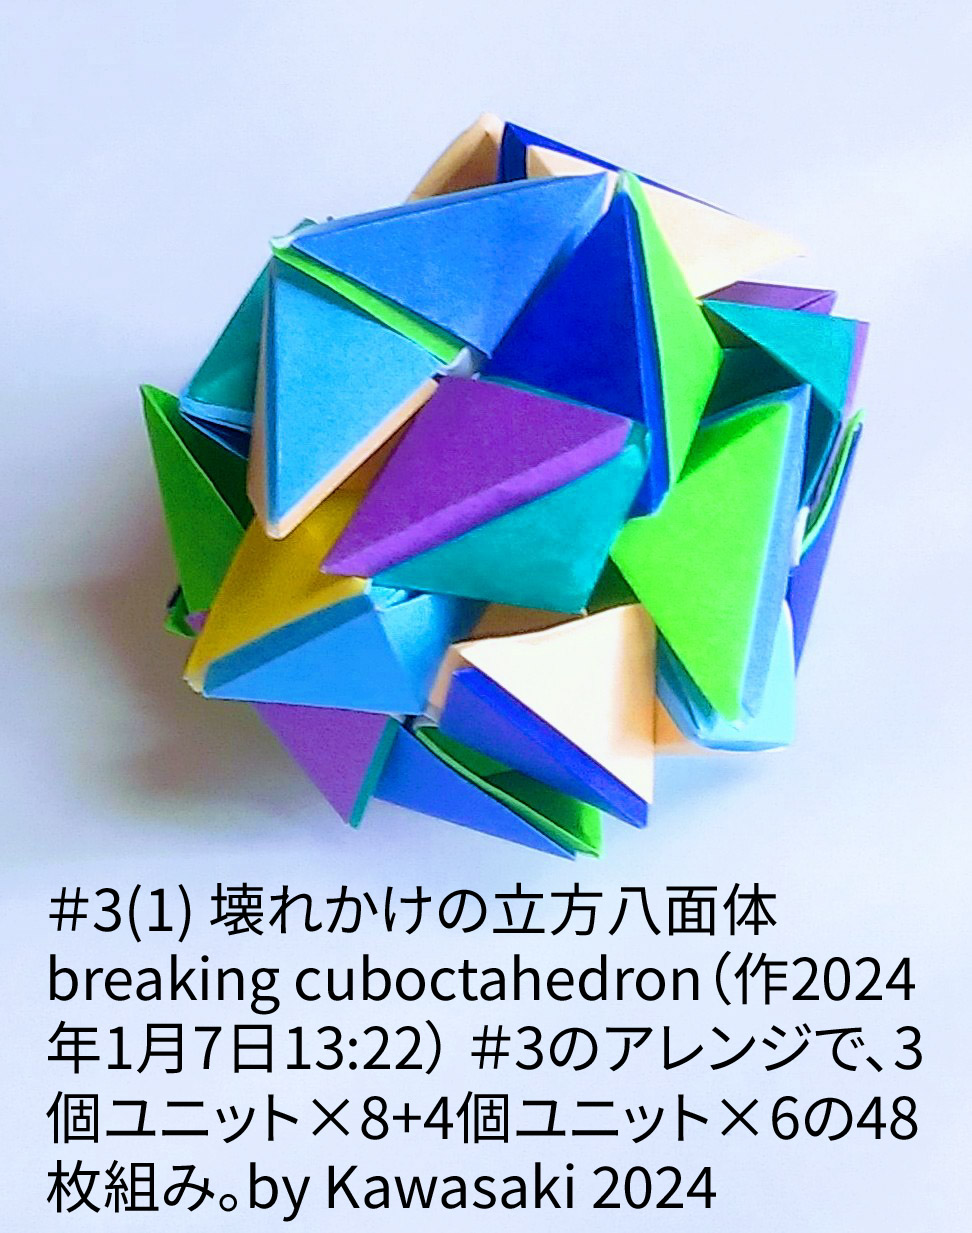 2024/01/07(Sun) 14:39「＃3(1) 壊れかけの立方八面体 breaking cuboctahedron（作2024年1月7日13:22）」川崎敏和 T.Kawasaki
（創作者 Author：川崎敏和 T.Kawasaki,　製作者 Folder：川崎敏和 T.Kawasaki ,　出典 Source：2024年川崎敏和折り紙キット＃3）
 ＃3のアレンジで、3個ユニット×8+4個ユニット×6の48枚組み。by Kawasaki 2024